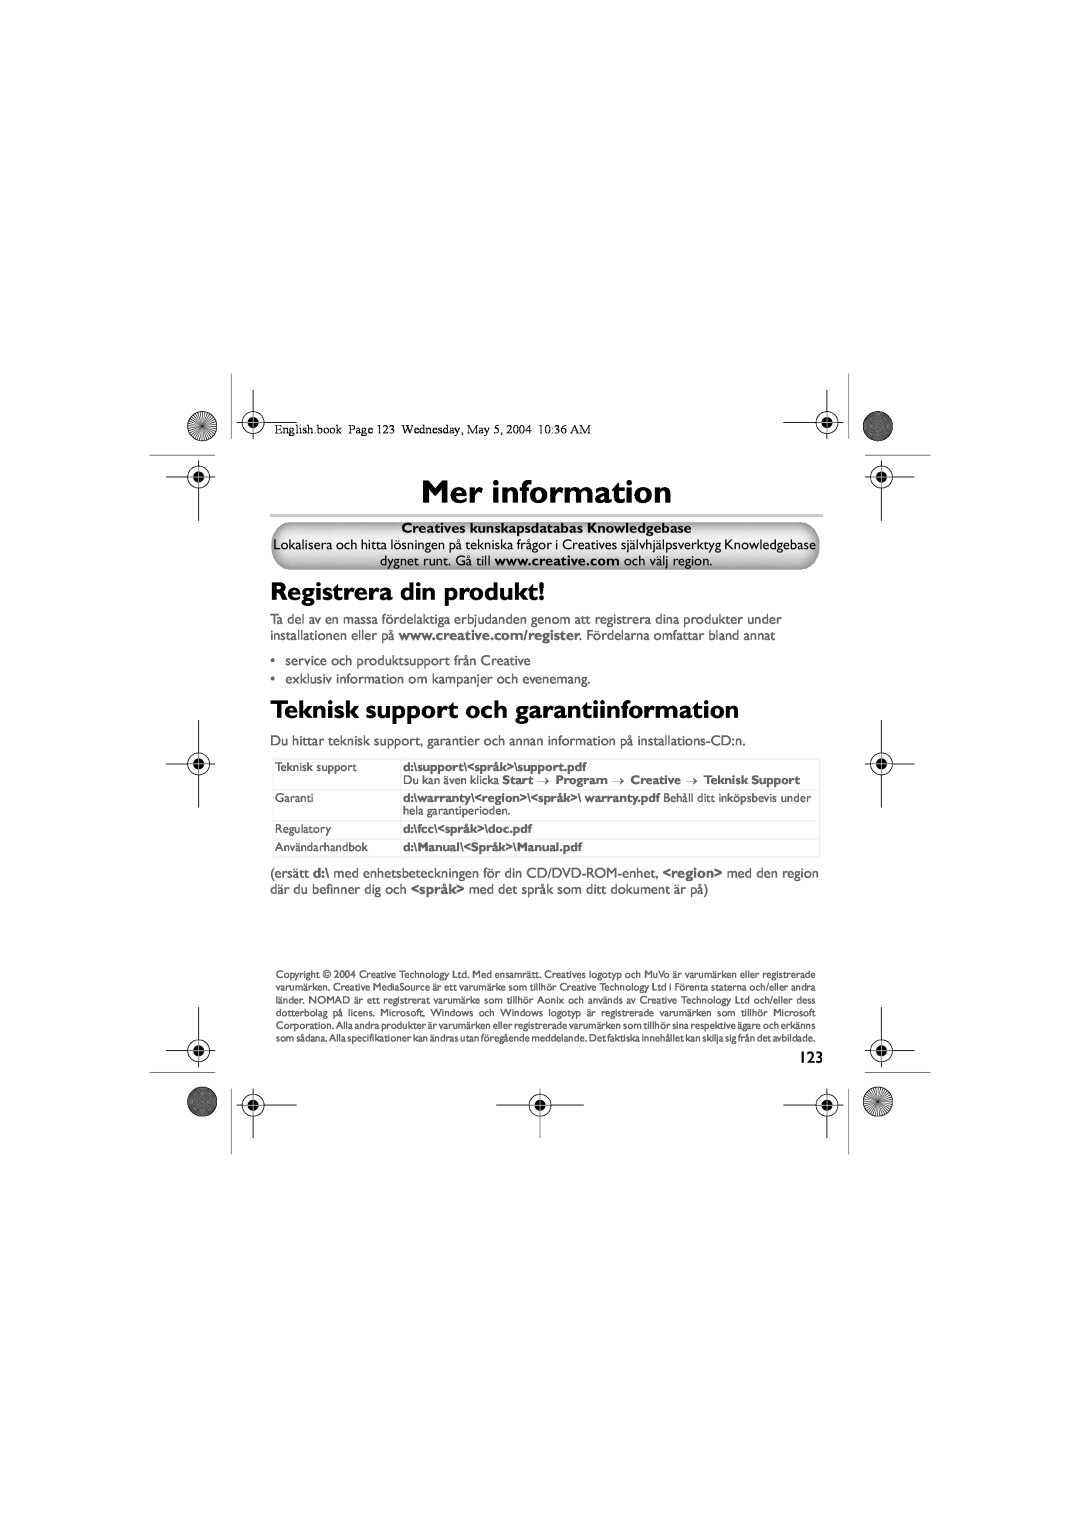 Musica CD Player manual Mer information, Registrera din produkt, Teknisk support och garantiinformation 